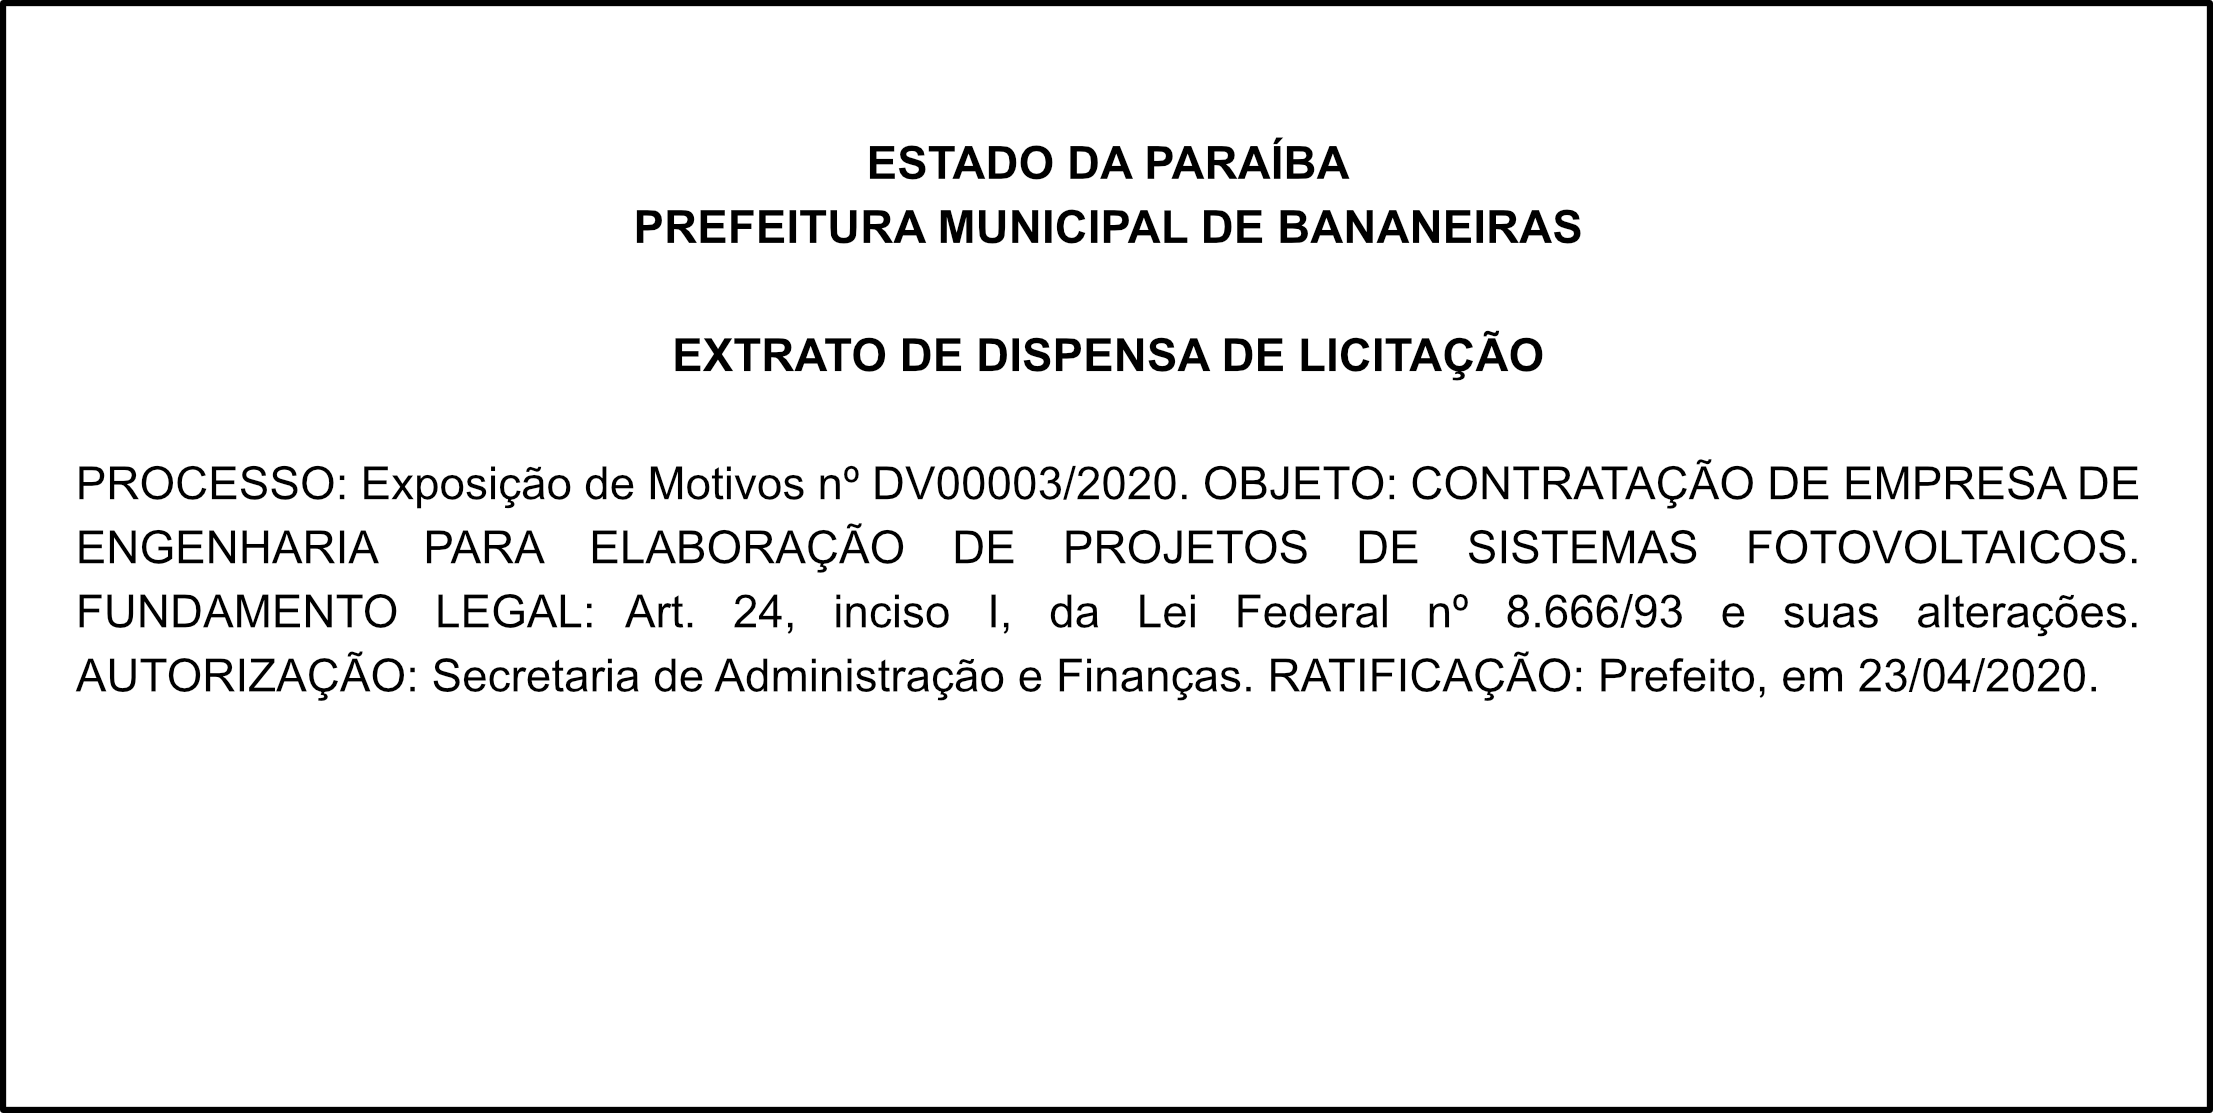 PREF. MUN. DE BANANEIRAS – EXTRATO DE DISPENSA DE LICITAÇÃO  DV 0003/2020